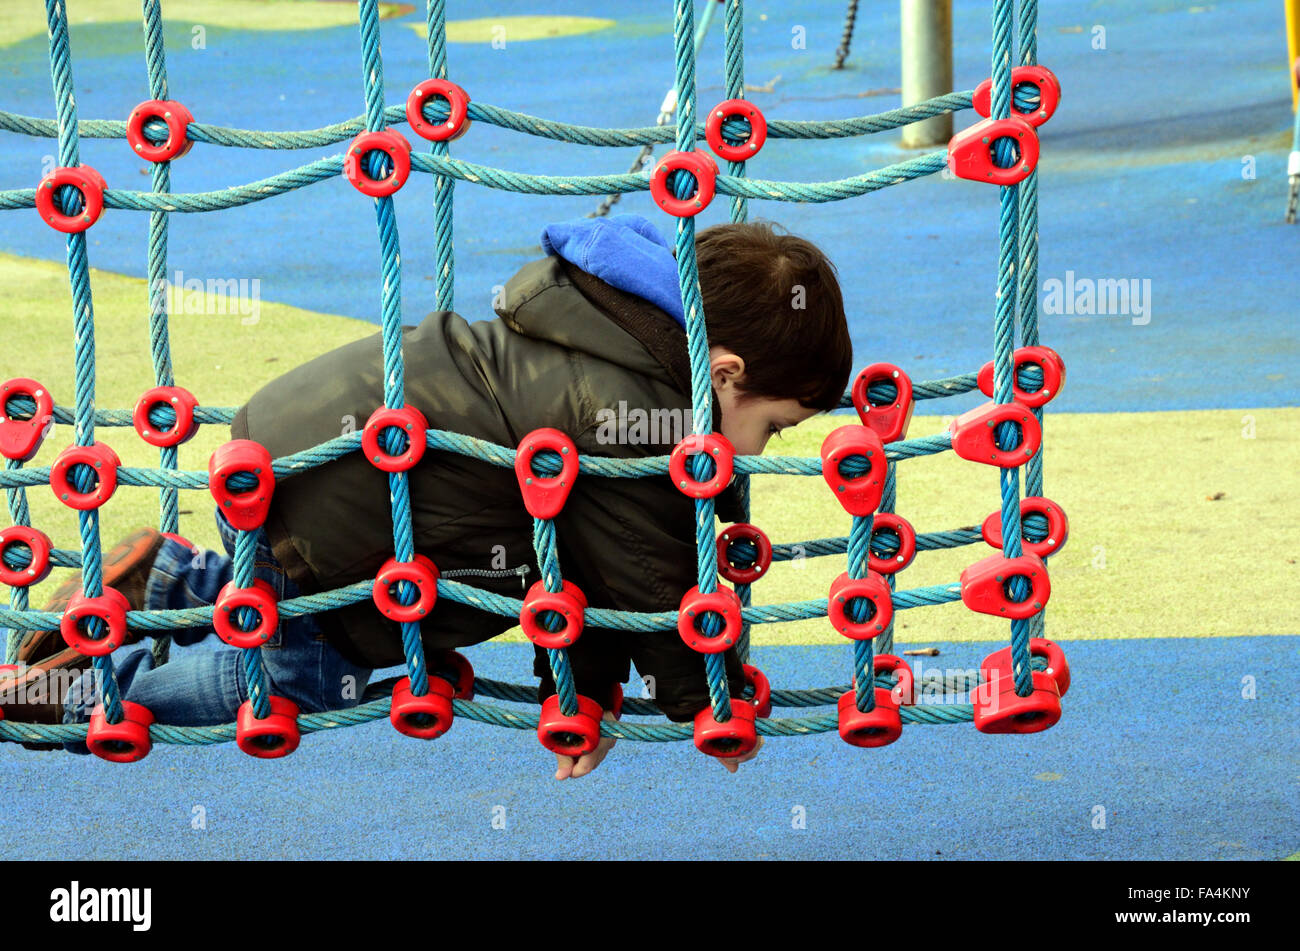 Un jeune garçon jouant sur un filet qui fait partie d'une escalade dans une aire de jeux pour enfants. Banque D'Images